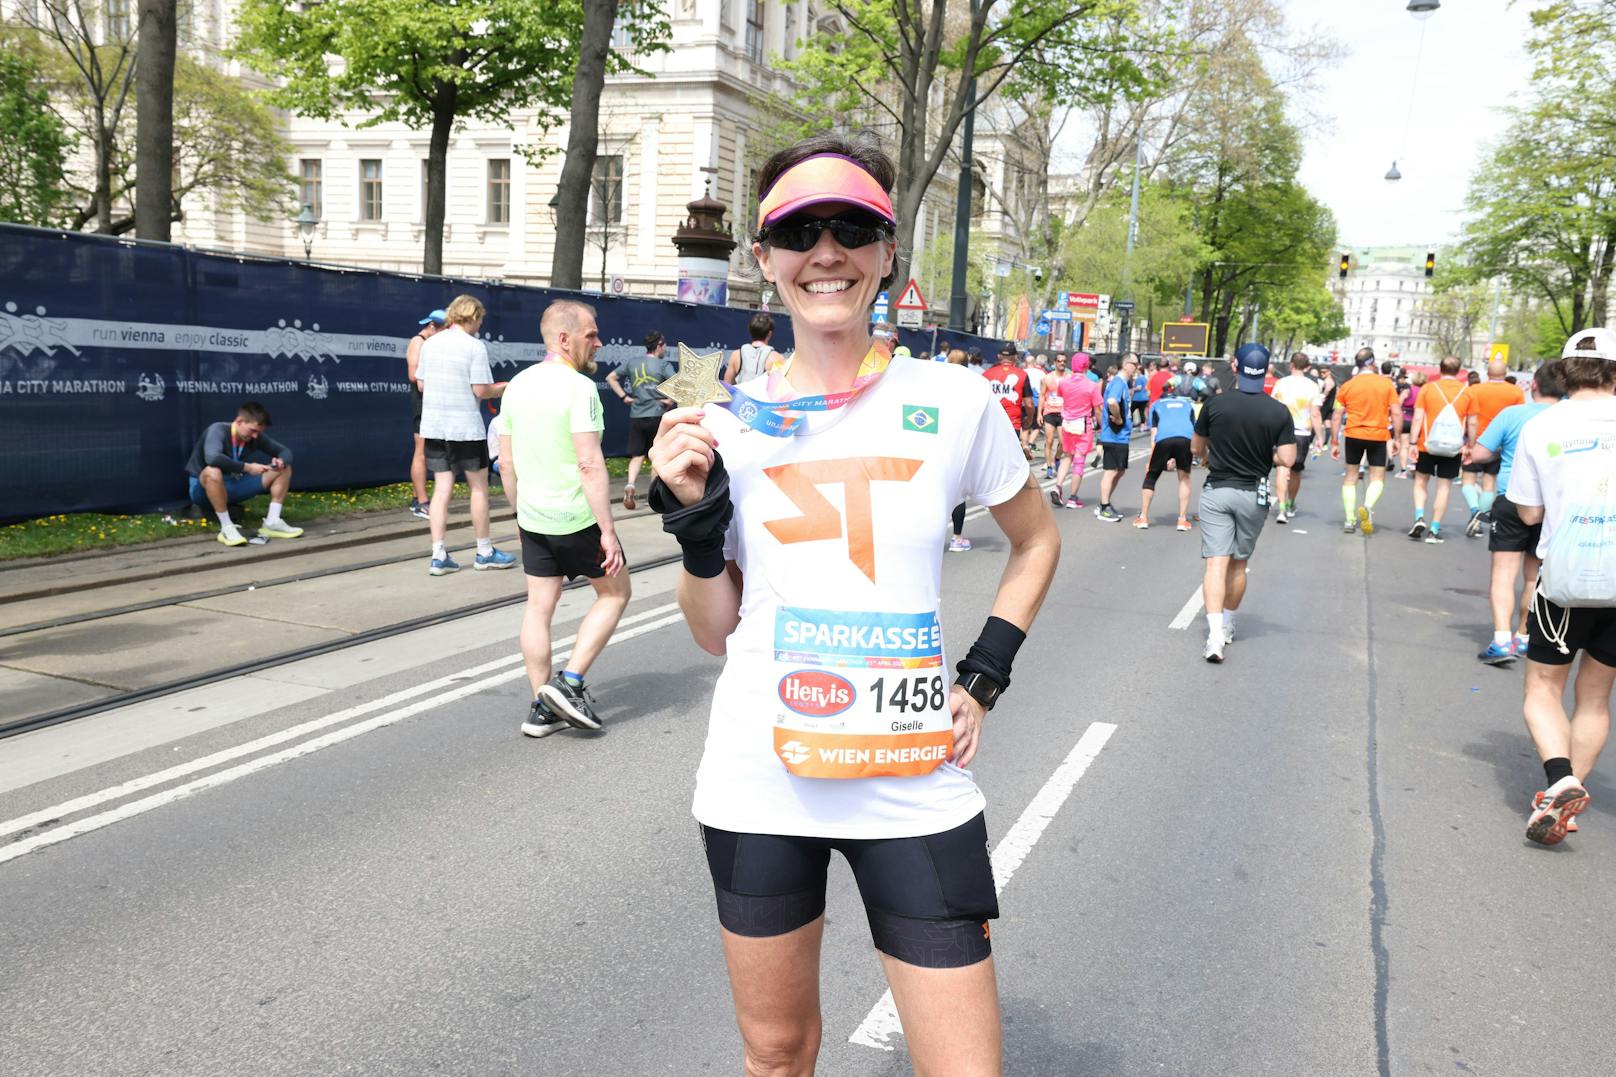 Giselle Afonso kommt aus Brasilien: "Es hat Spaß gemacht, aber für dieses Jahr habe ich von Marathons genug."